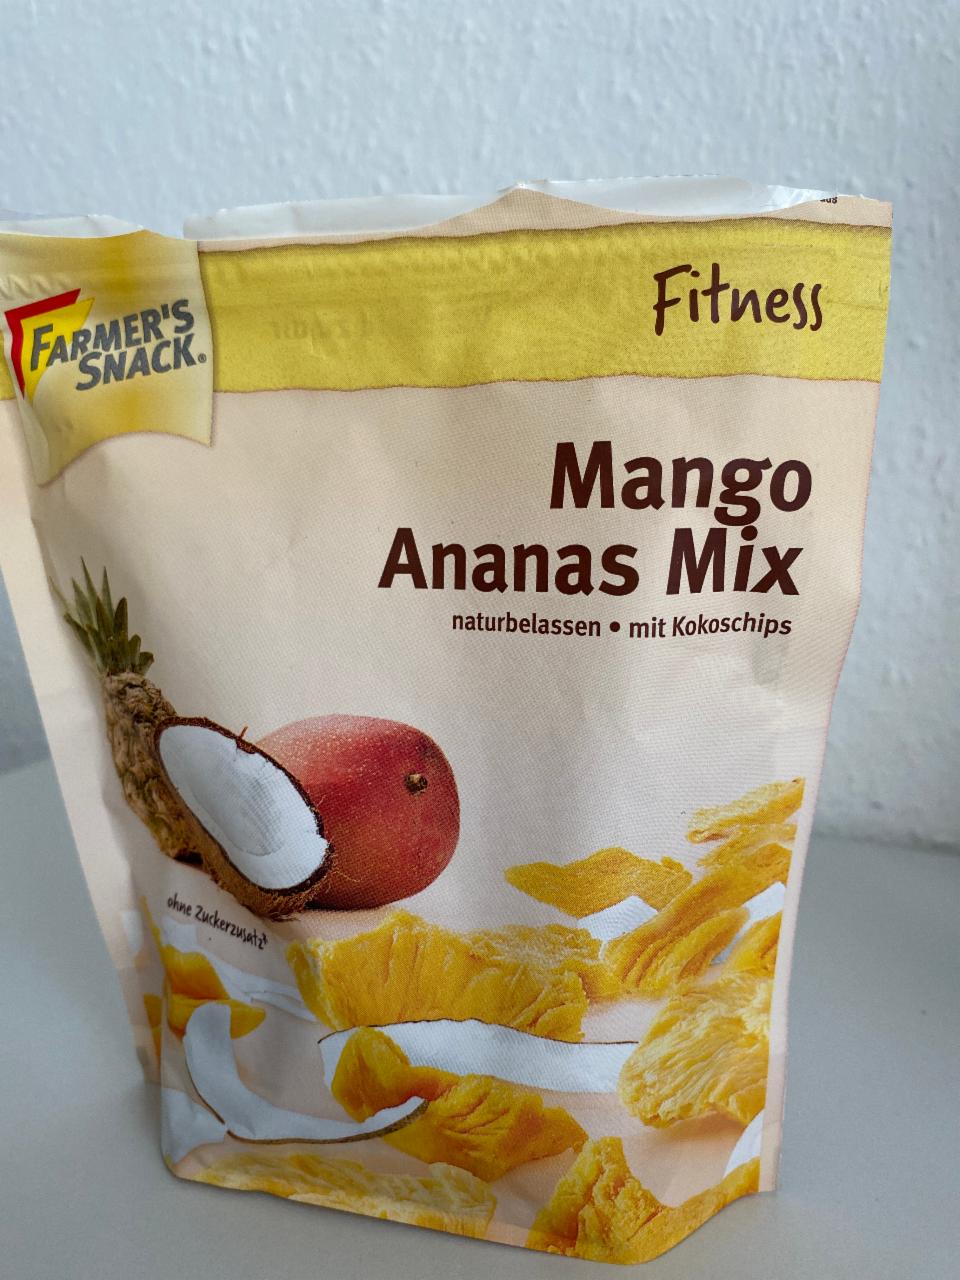 Фото - Мікс манго-ананас сушені Mango Ananas Mix Farmer's Snack